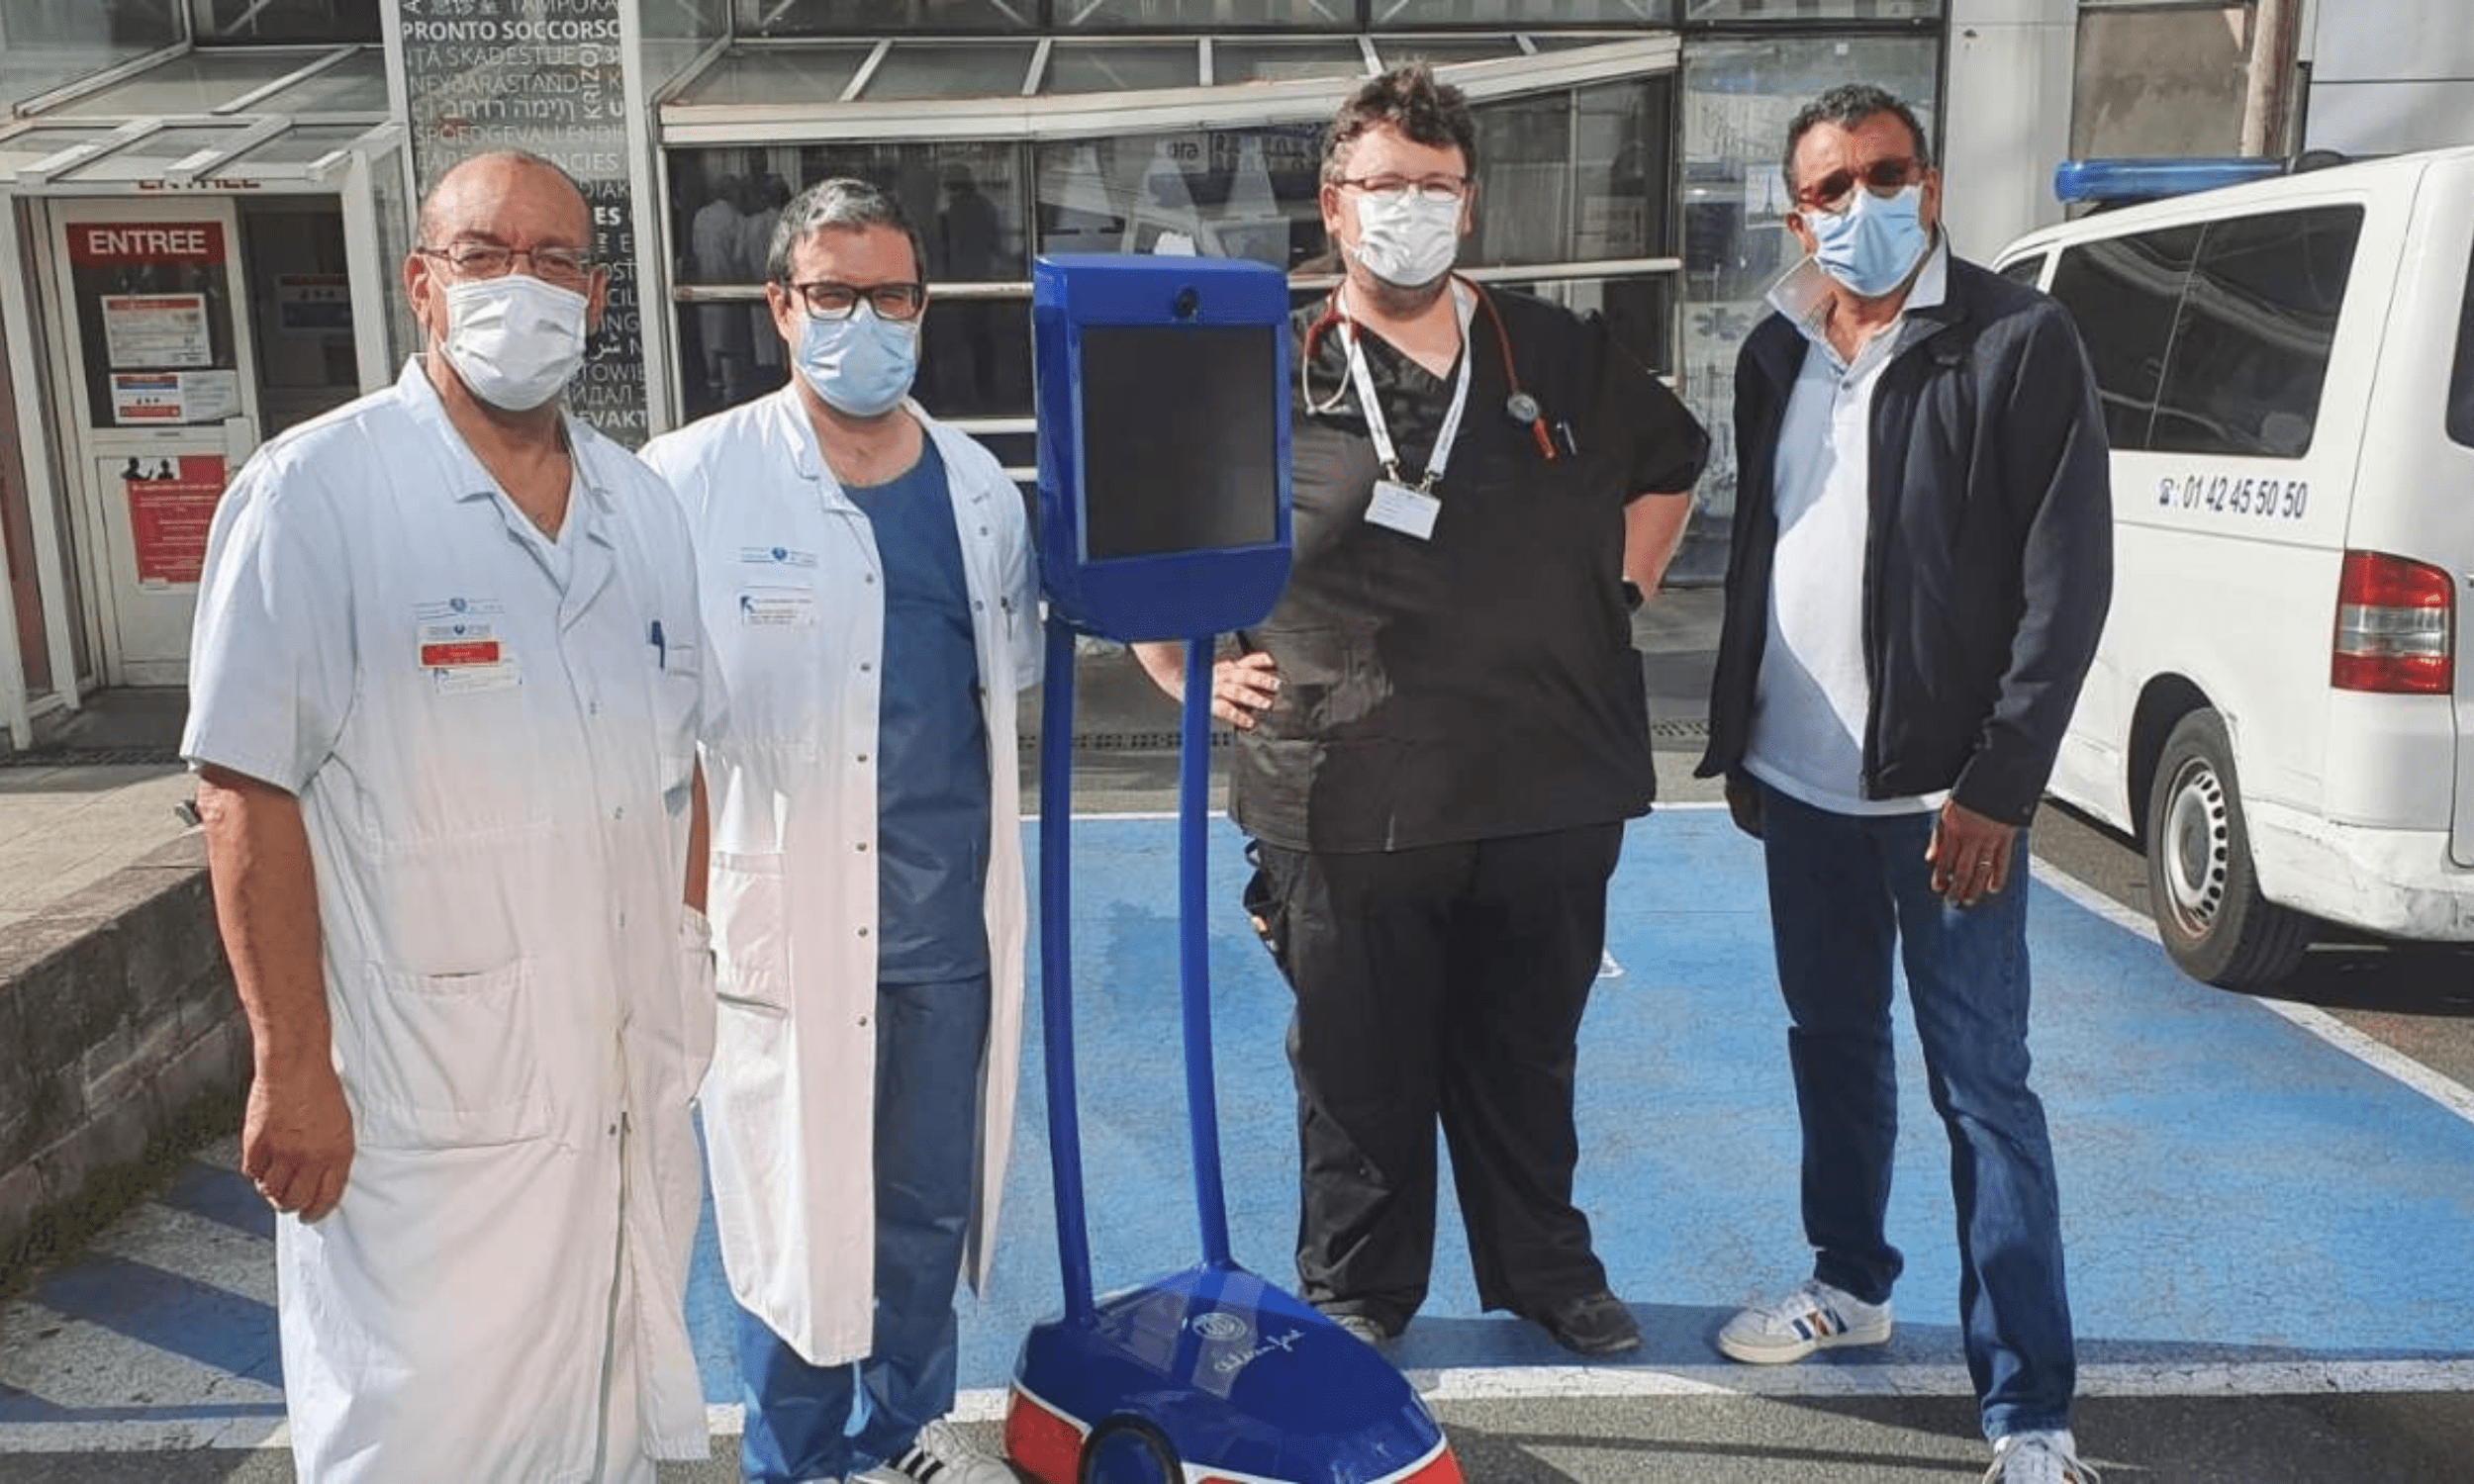 La Fondation PSG - Paris Saint-Germain a mis son robot à disposition des soignants travaillant aux Service des urgences - Hôpital Lariboisière afin de leur permettre de rendre visite aux patients, tout en les préservant des risques de contamination.